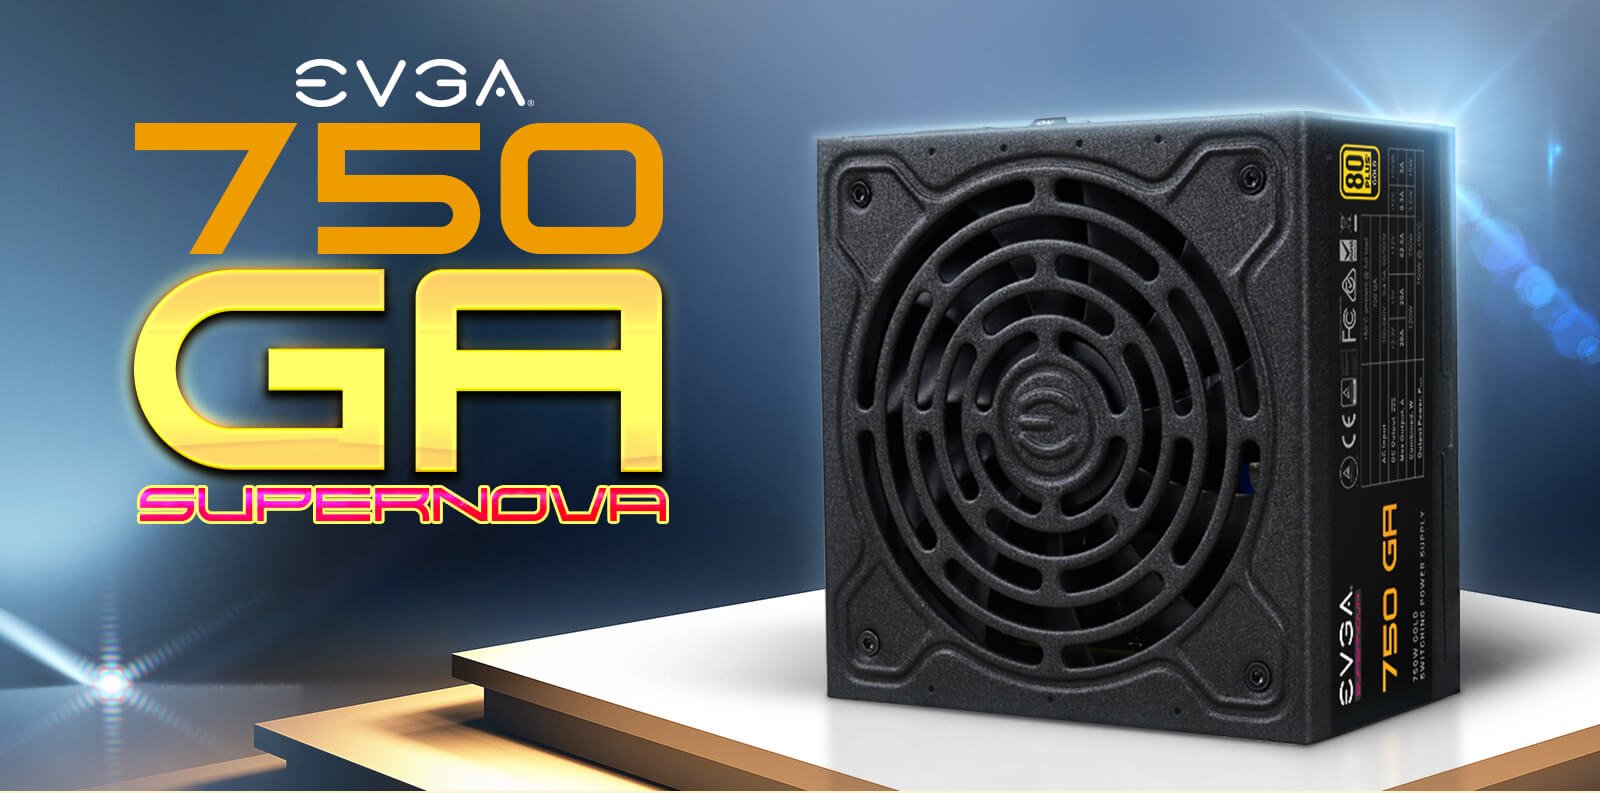 EVGA SuperNOVA 750 GA Fully Modular Power Supply facing forward and EVGA logo